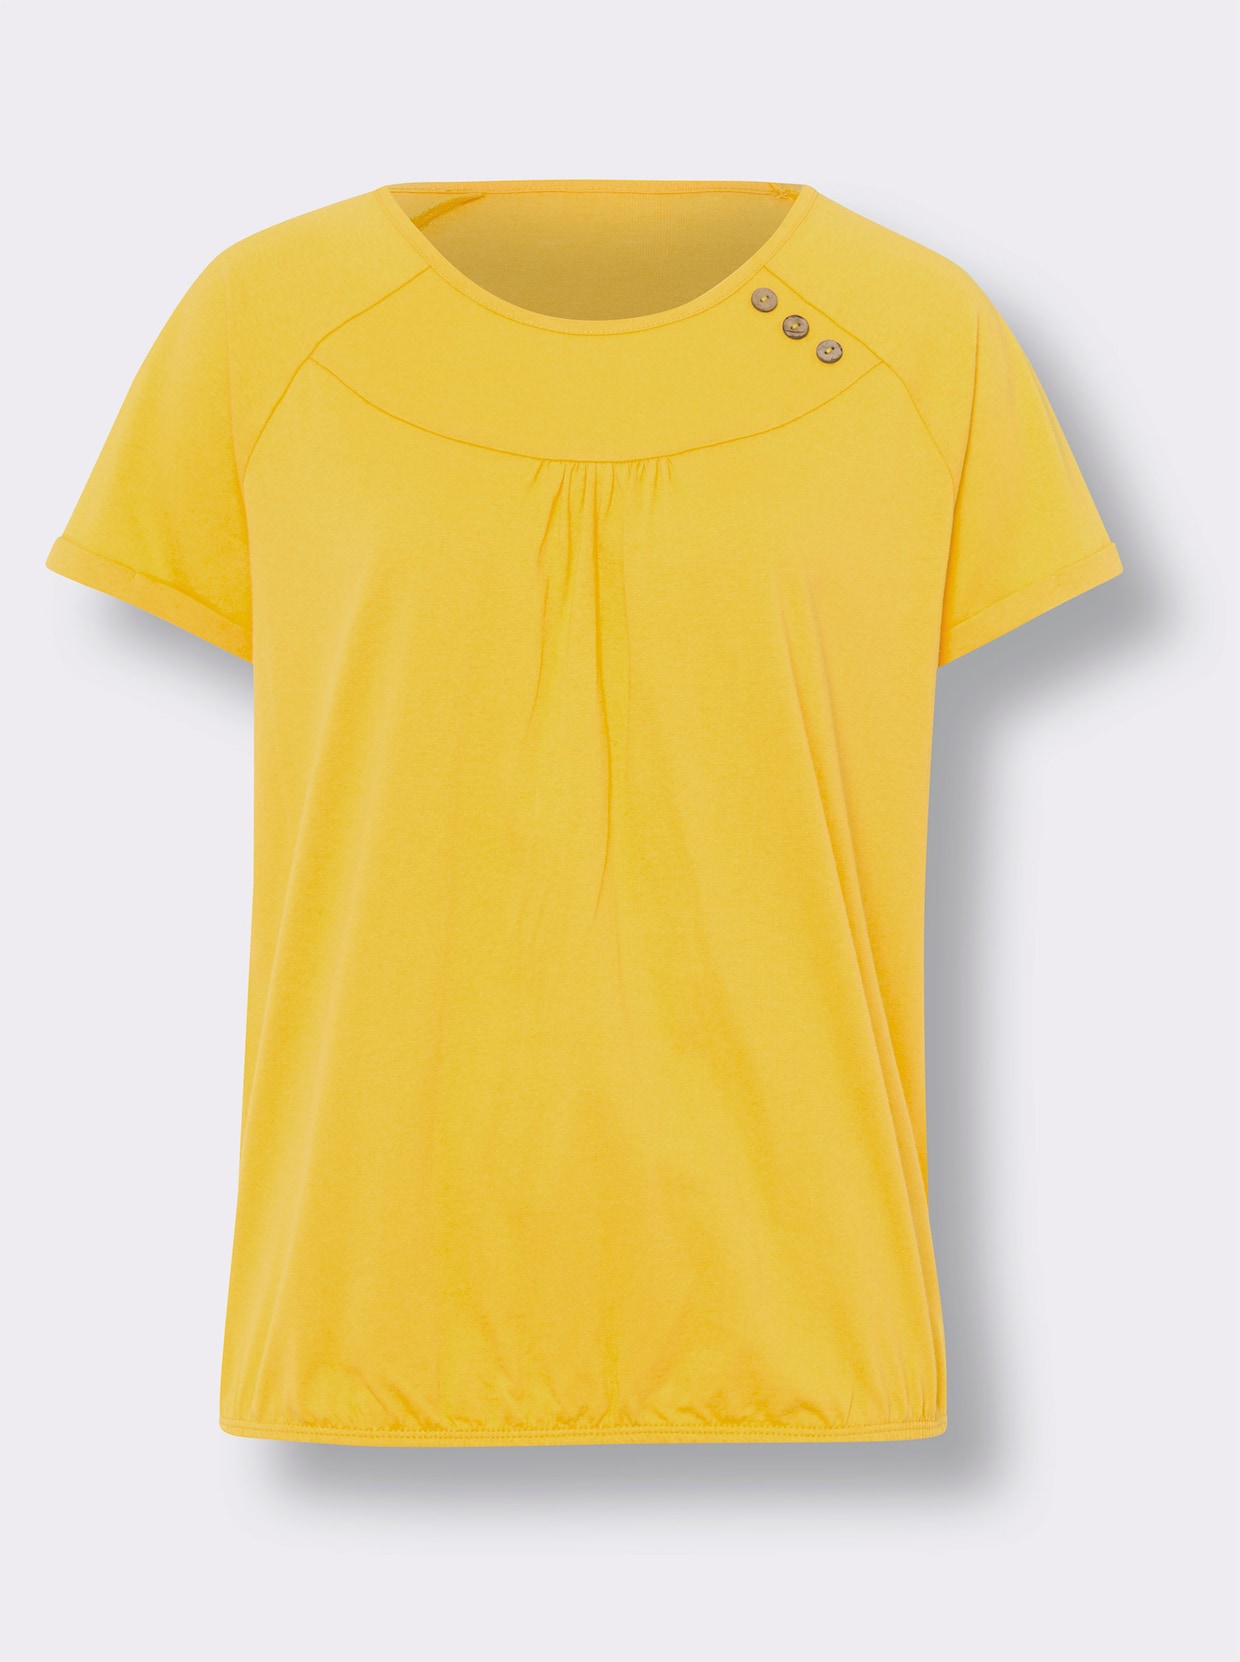 Tričko s krátkým rukávem - sluneční žlutá